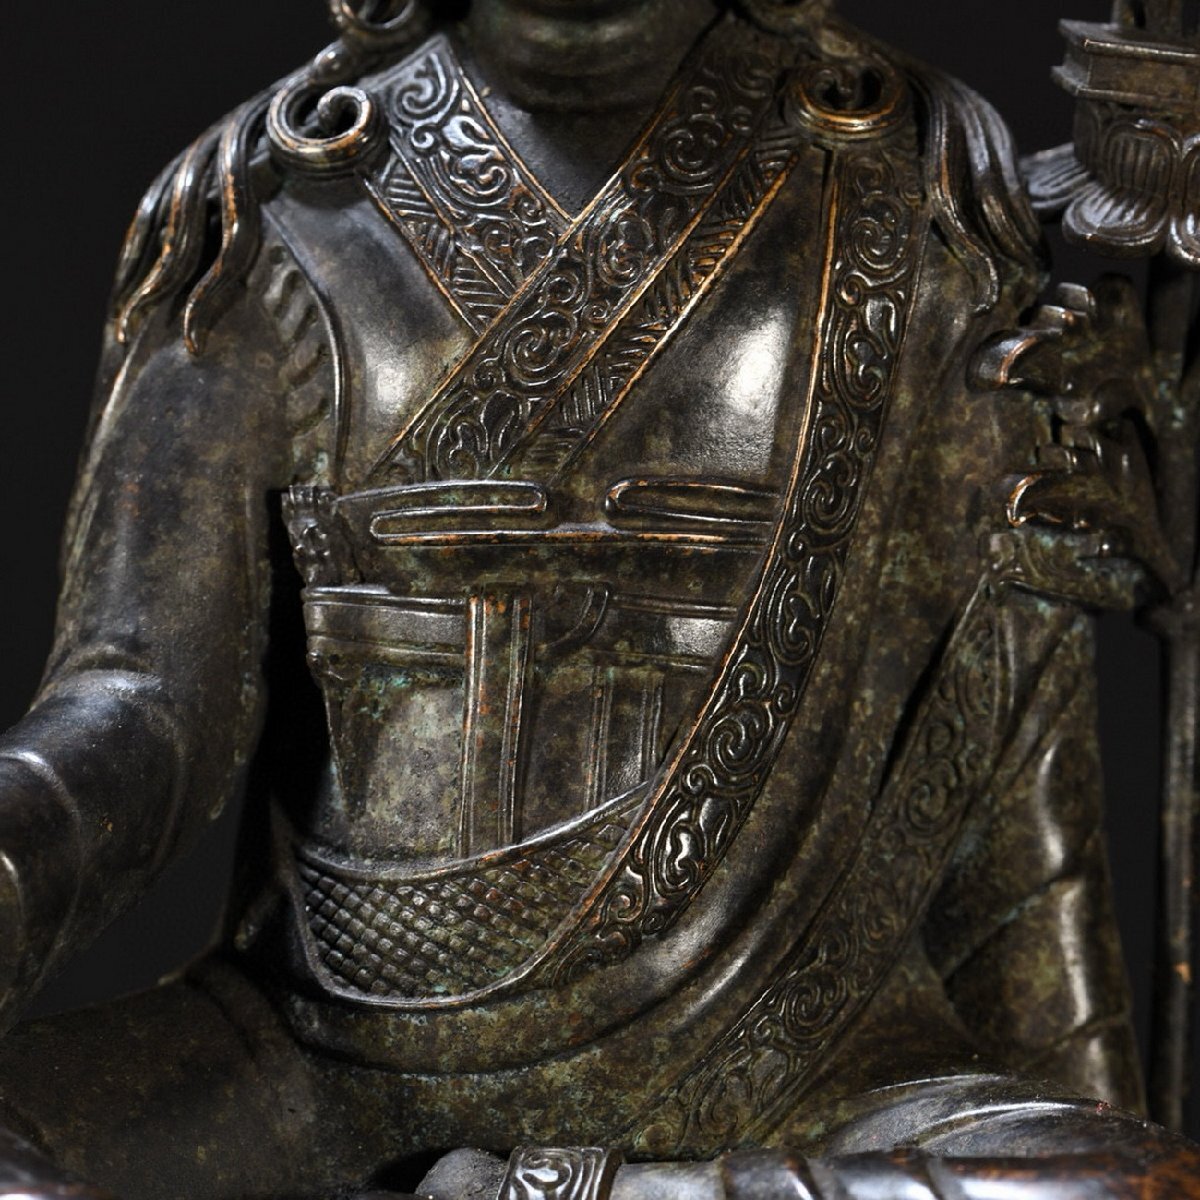 【清】某有名収集家買取品 西蔵・チベット伝来・時代物 銅製 ジグメ・リンパ造像 極細工 密教古美術_画像3